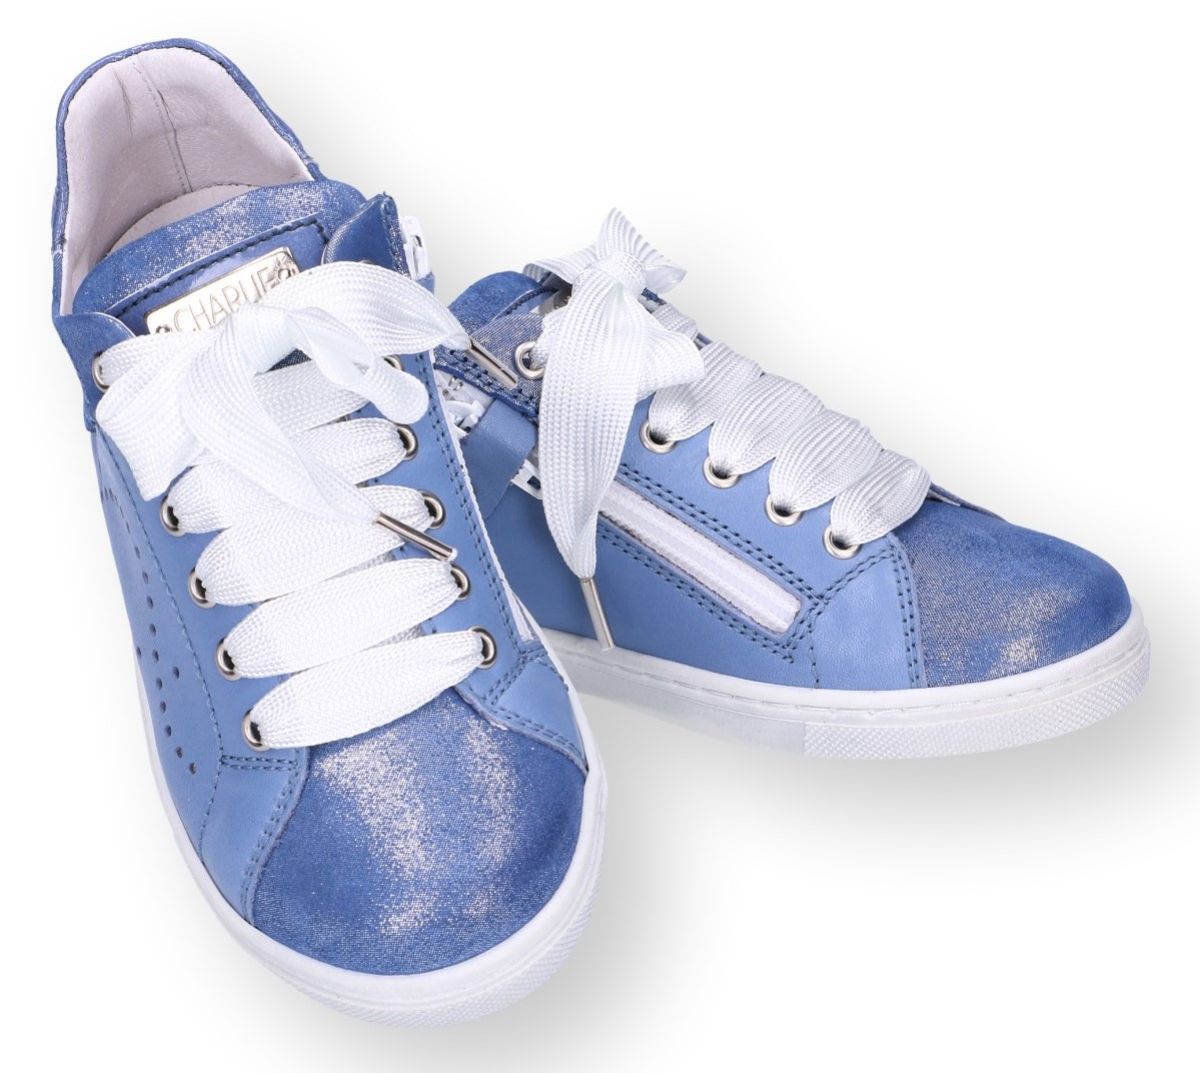 Weven Slovenië terug Charlie CH511 meisjesschoenen blauw - schoenen | Schoenen Karo